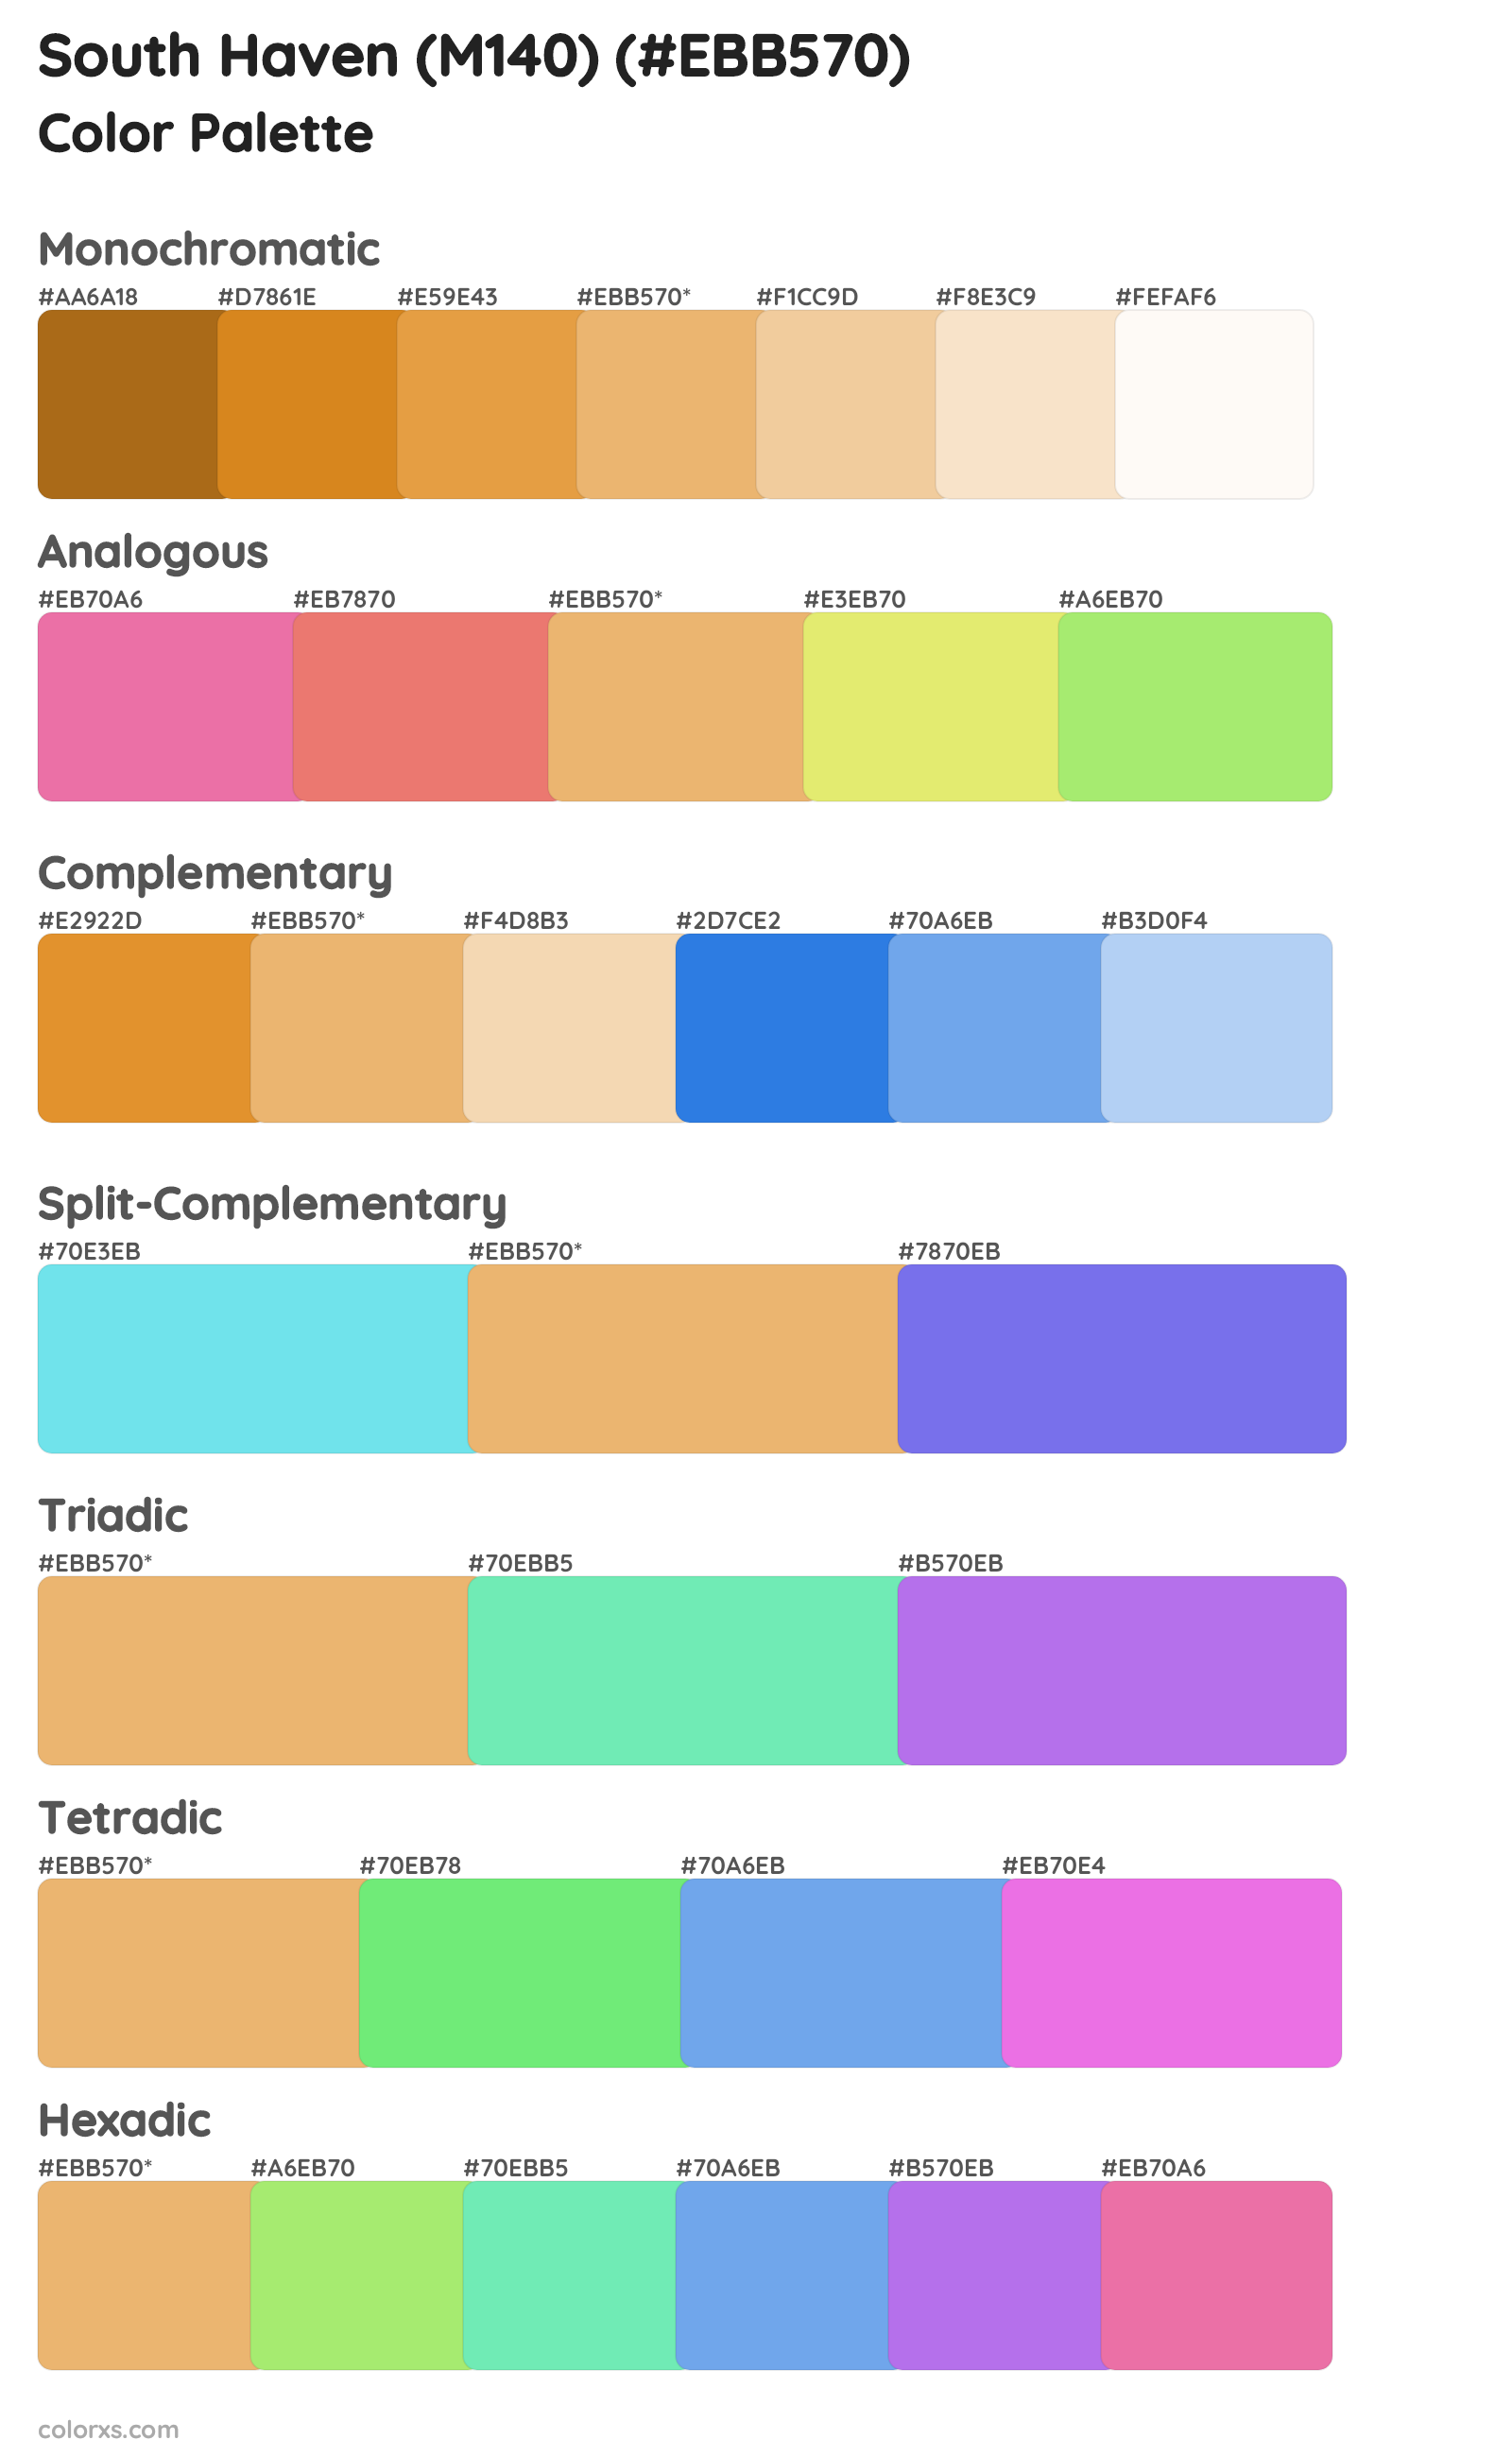 South Haven (M140) Color Scheme Palettes